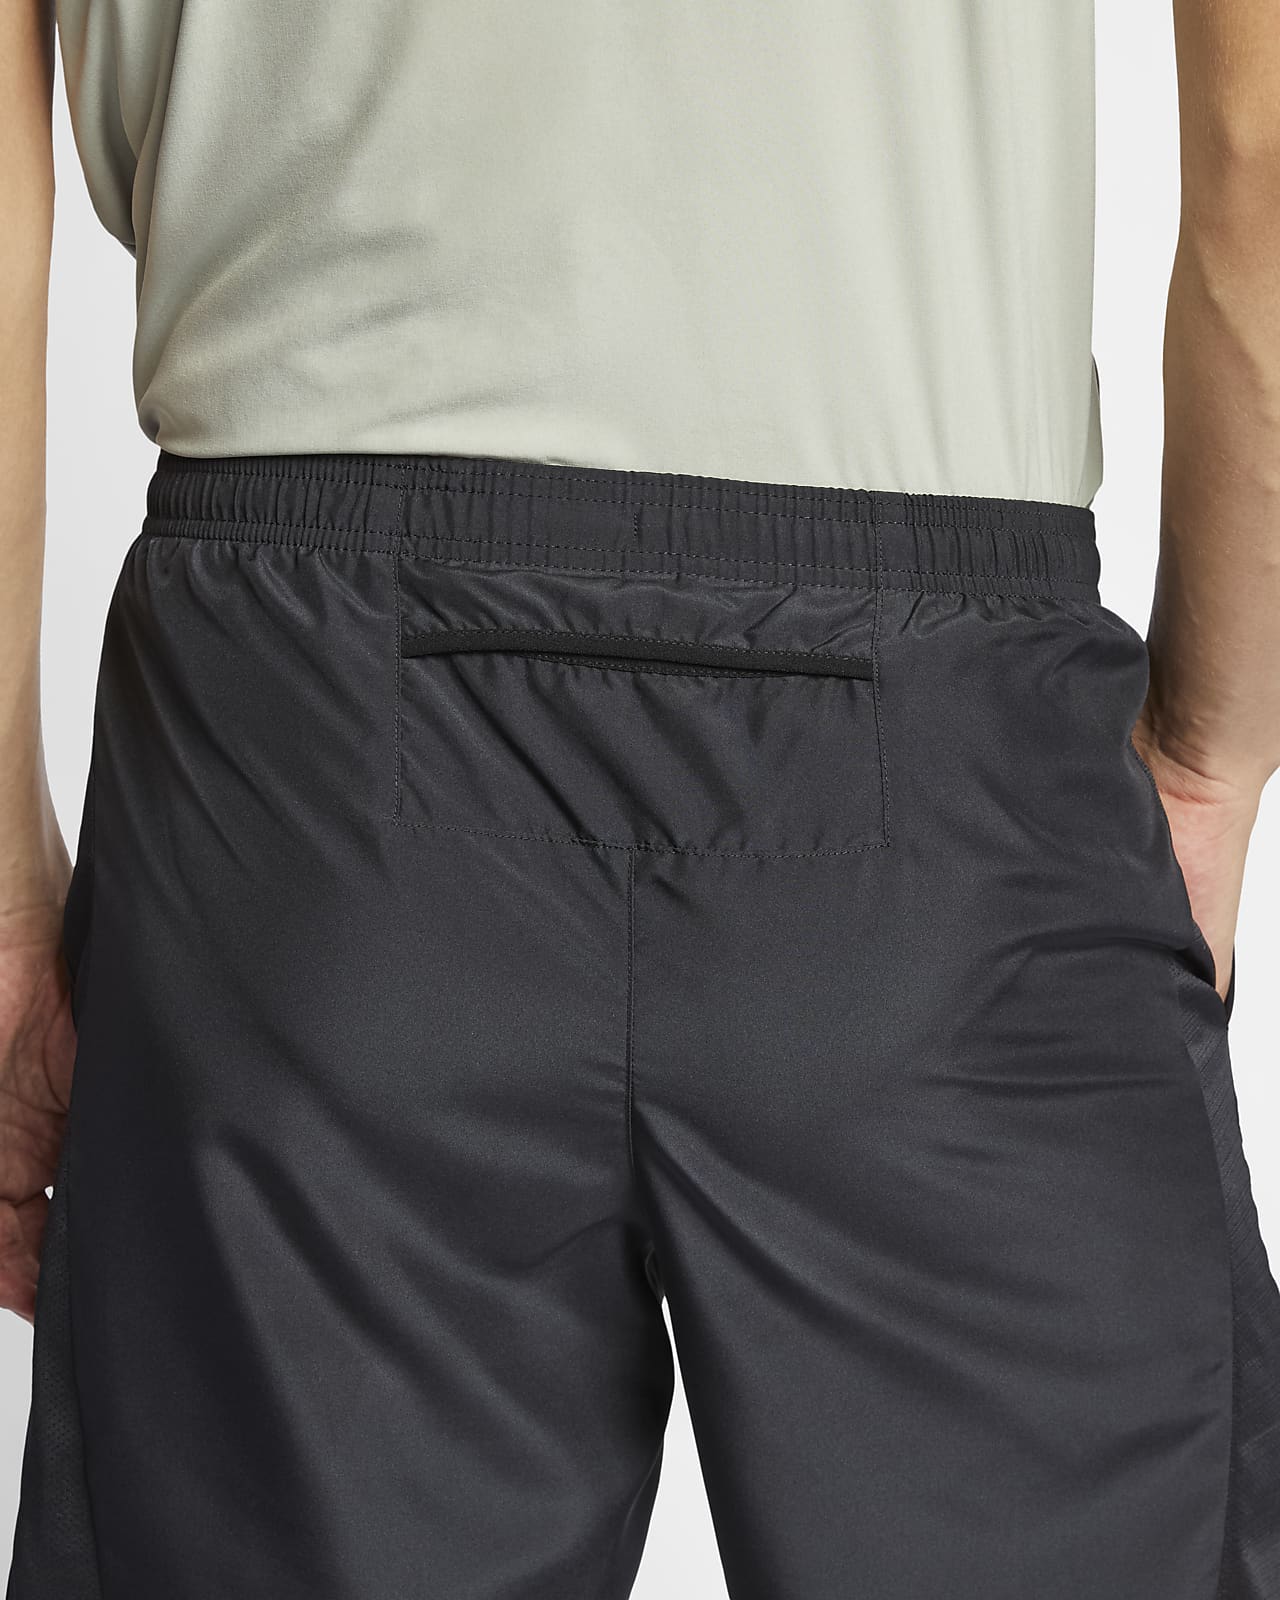 nike shorts with back pocket